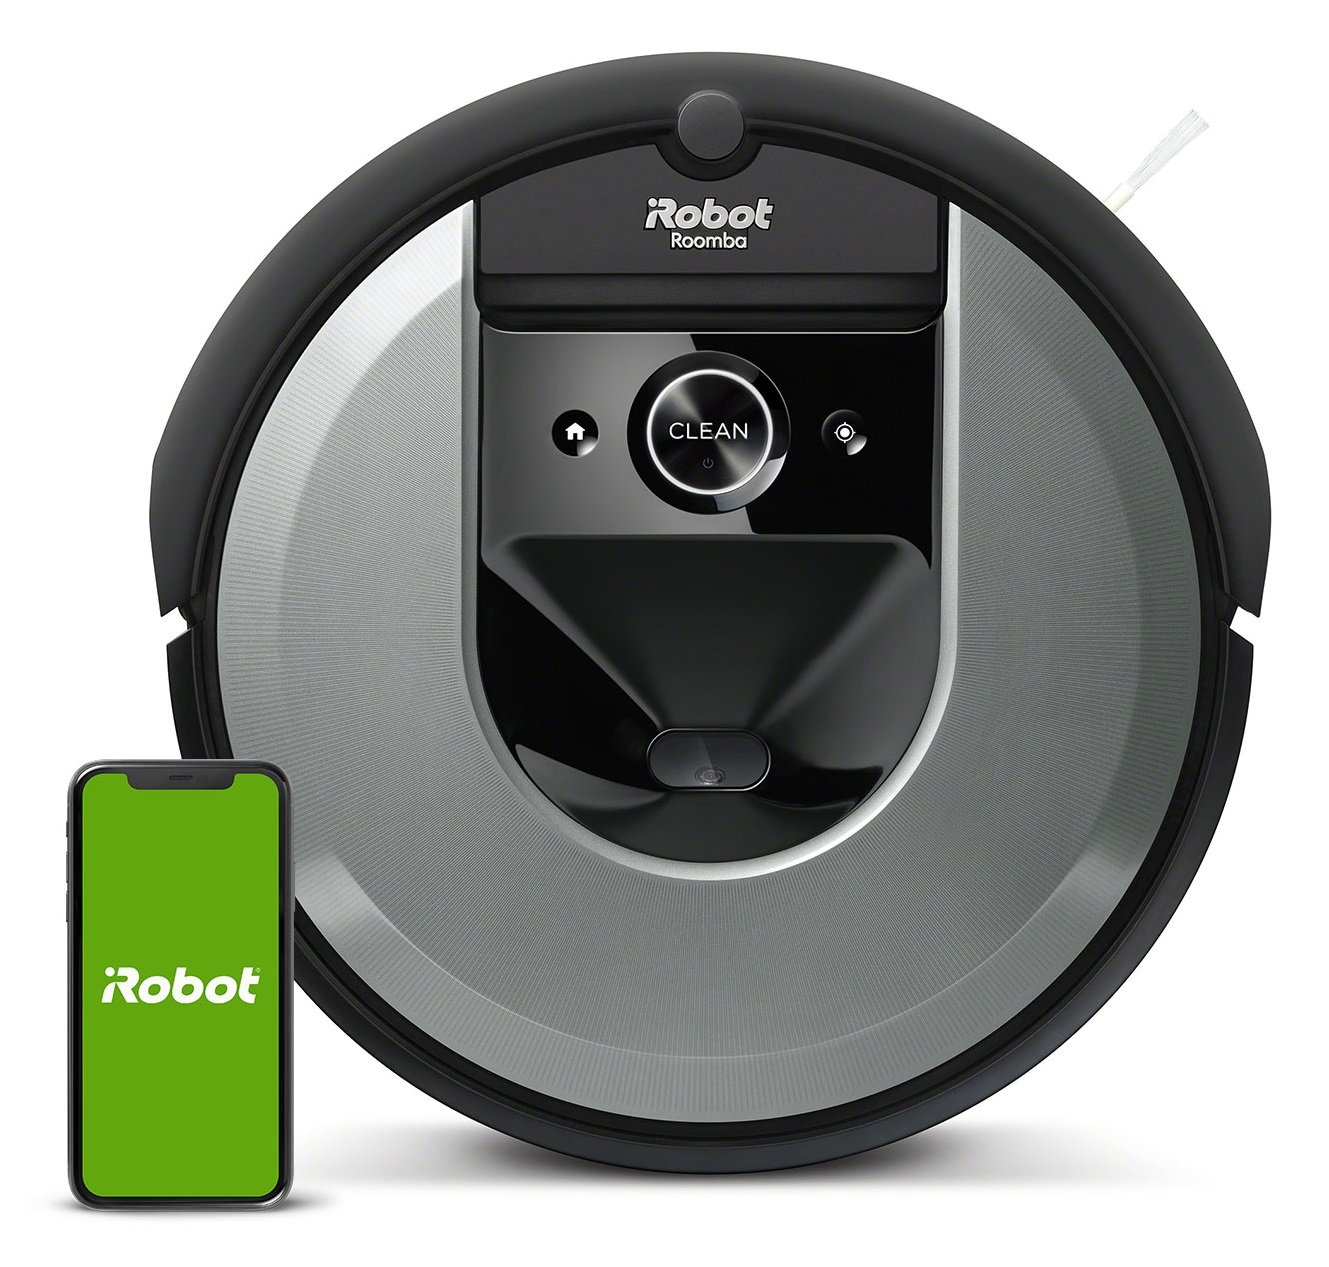 iRobot Roomba, odkurzacze Roomba - niskie ceny i setki opinii w Media Expert